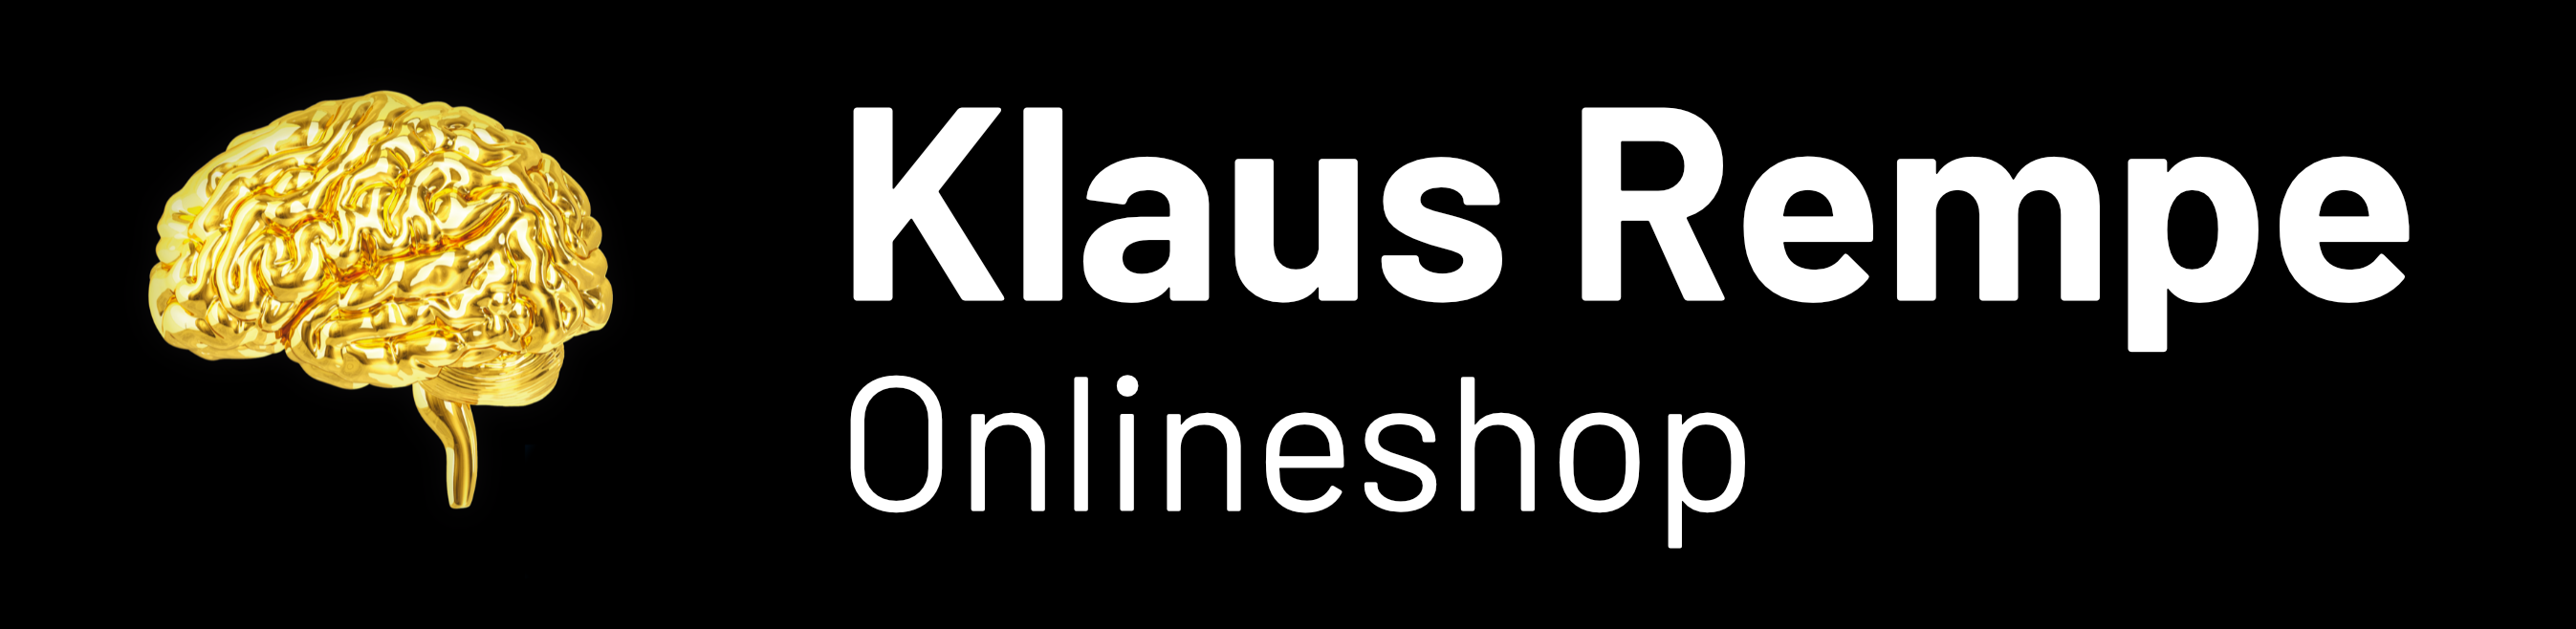 Klaus Rempe Onlineshop